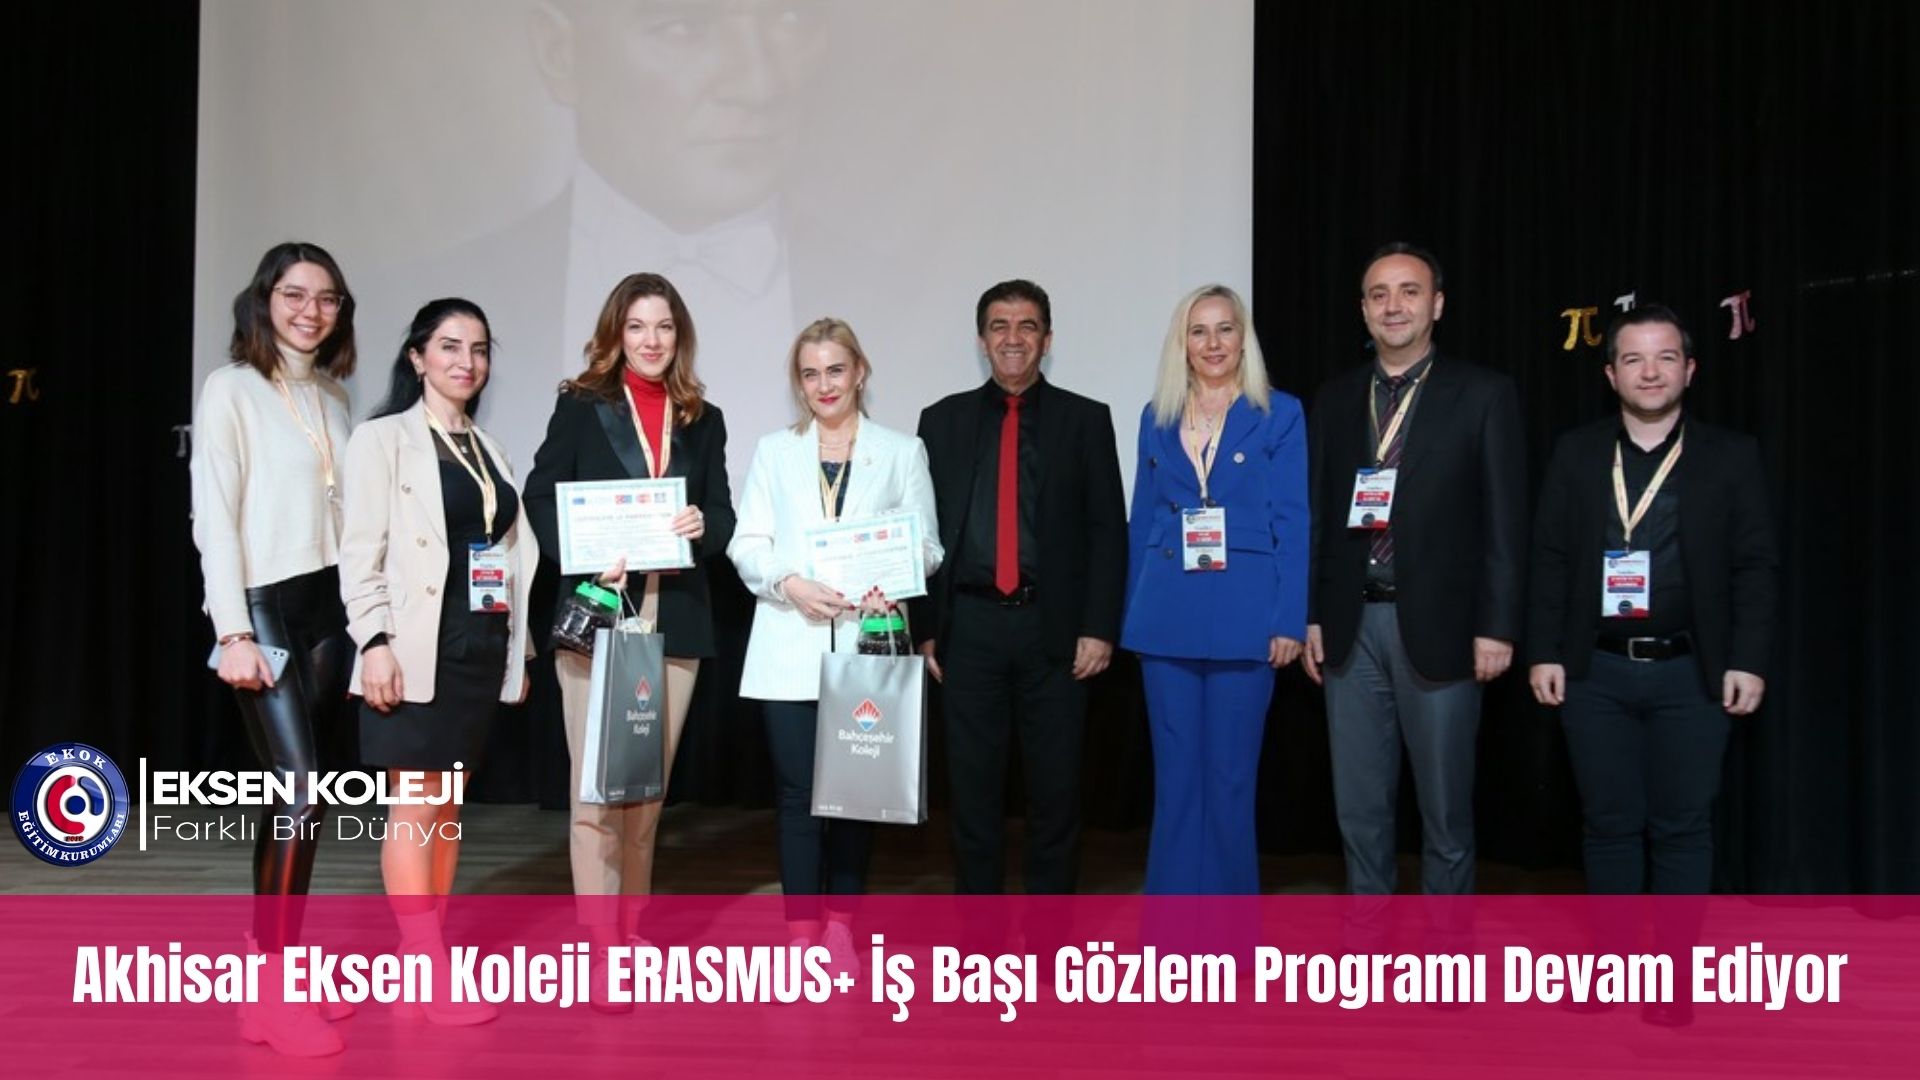 Akhisar Eksen Okulları Erasmus+ Projeleri kapsamında Litvanya'dan gelen rehber öğretmen ve ahlak ögretmeni için işbaşı gözlem etkinliklerine devam ediyor.